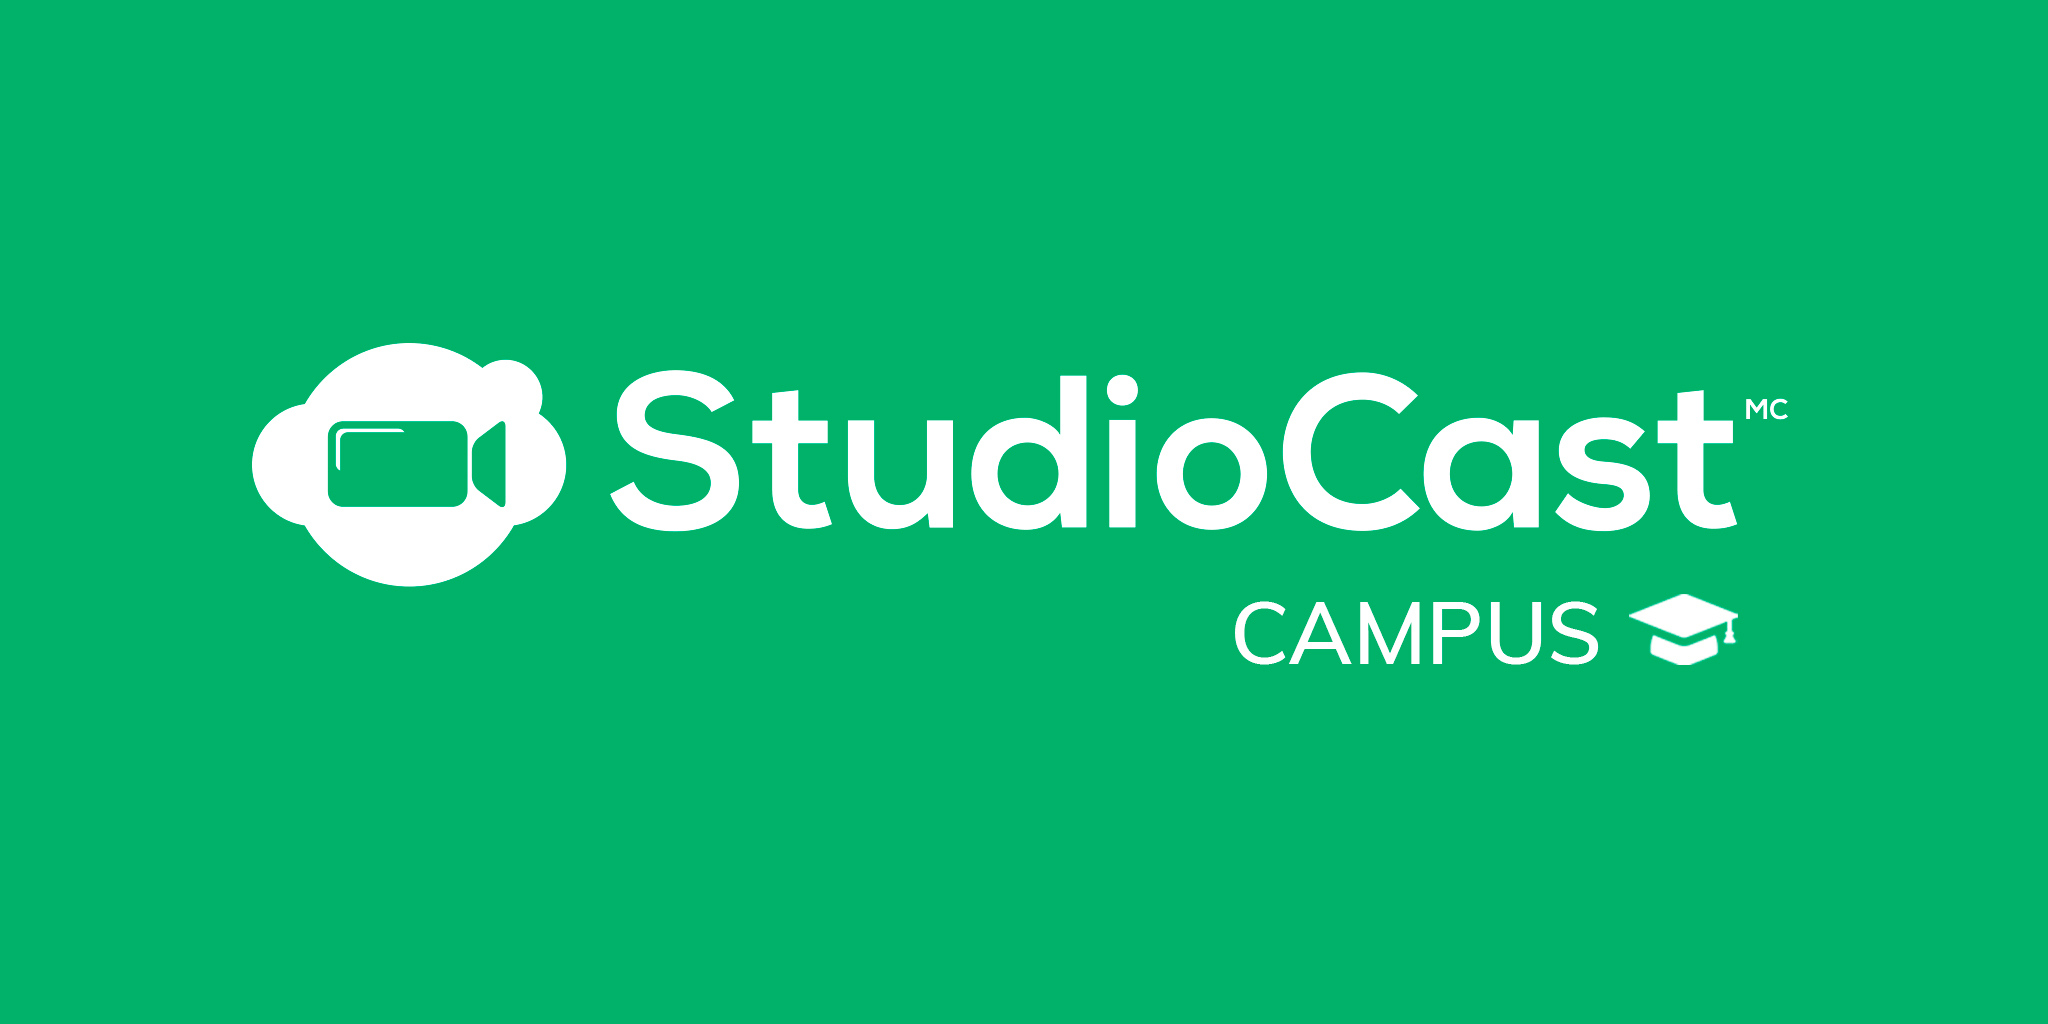 Format 2 1 studiocast campus